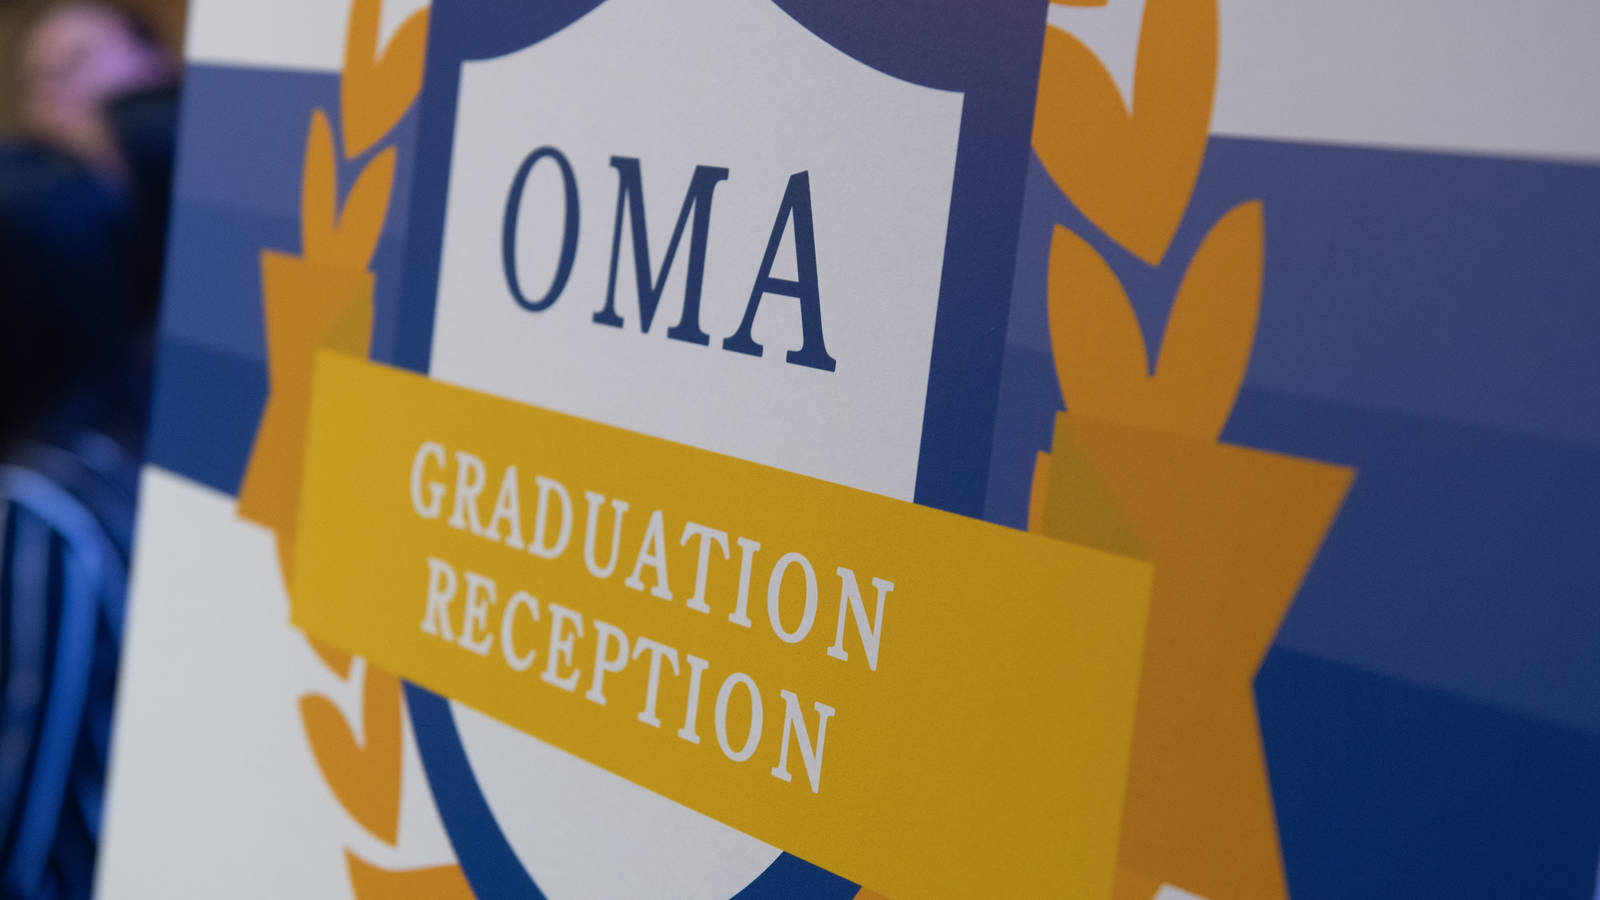 OMA grad reception logo